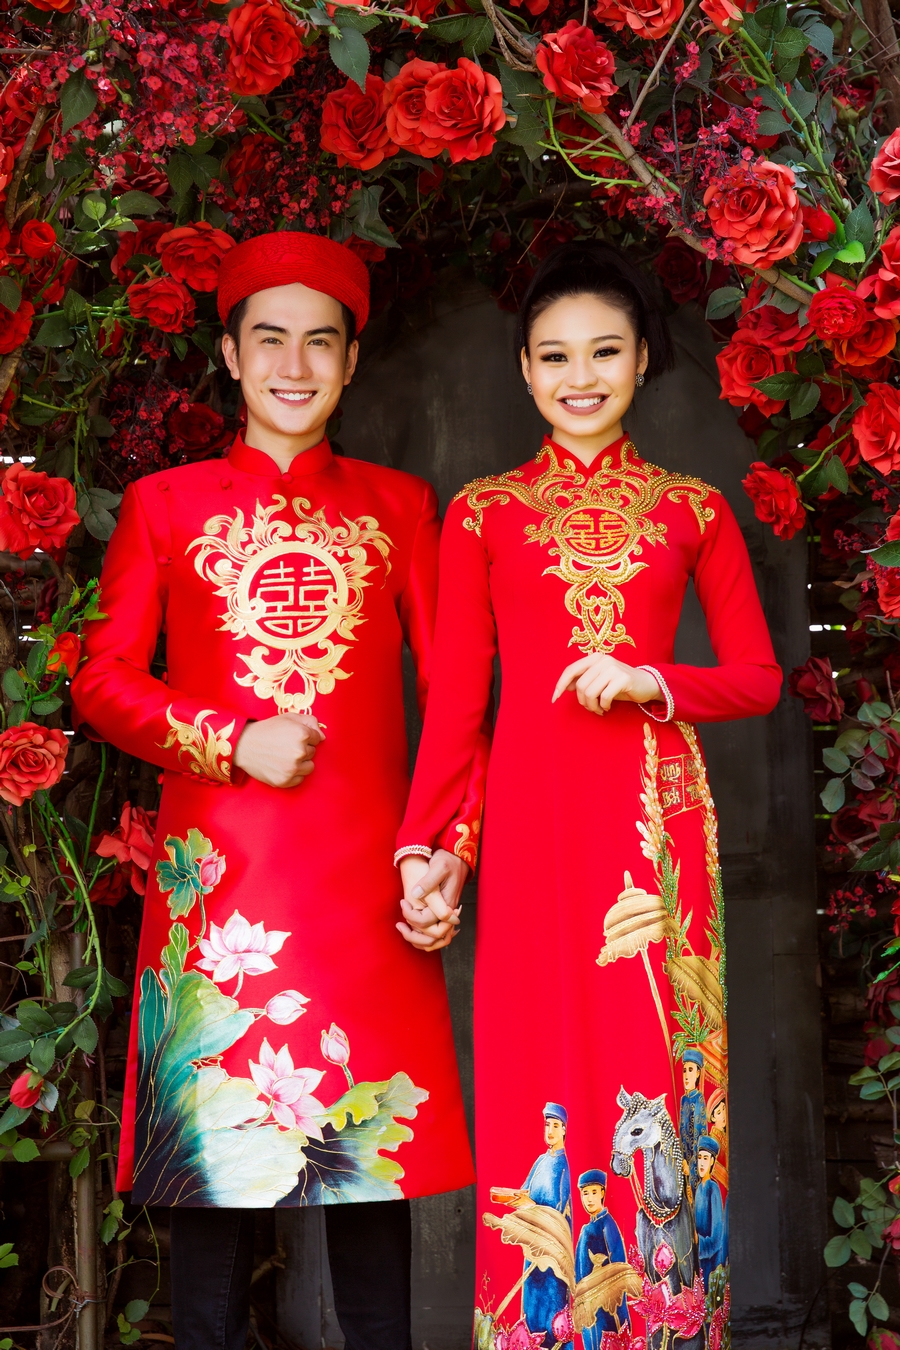 Ái nữ của danh hài được Hoài Linh "đòi cưới" làm cô dâu bên siêu mẫu điển trai - 2